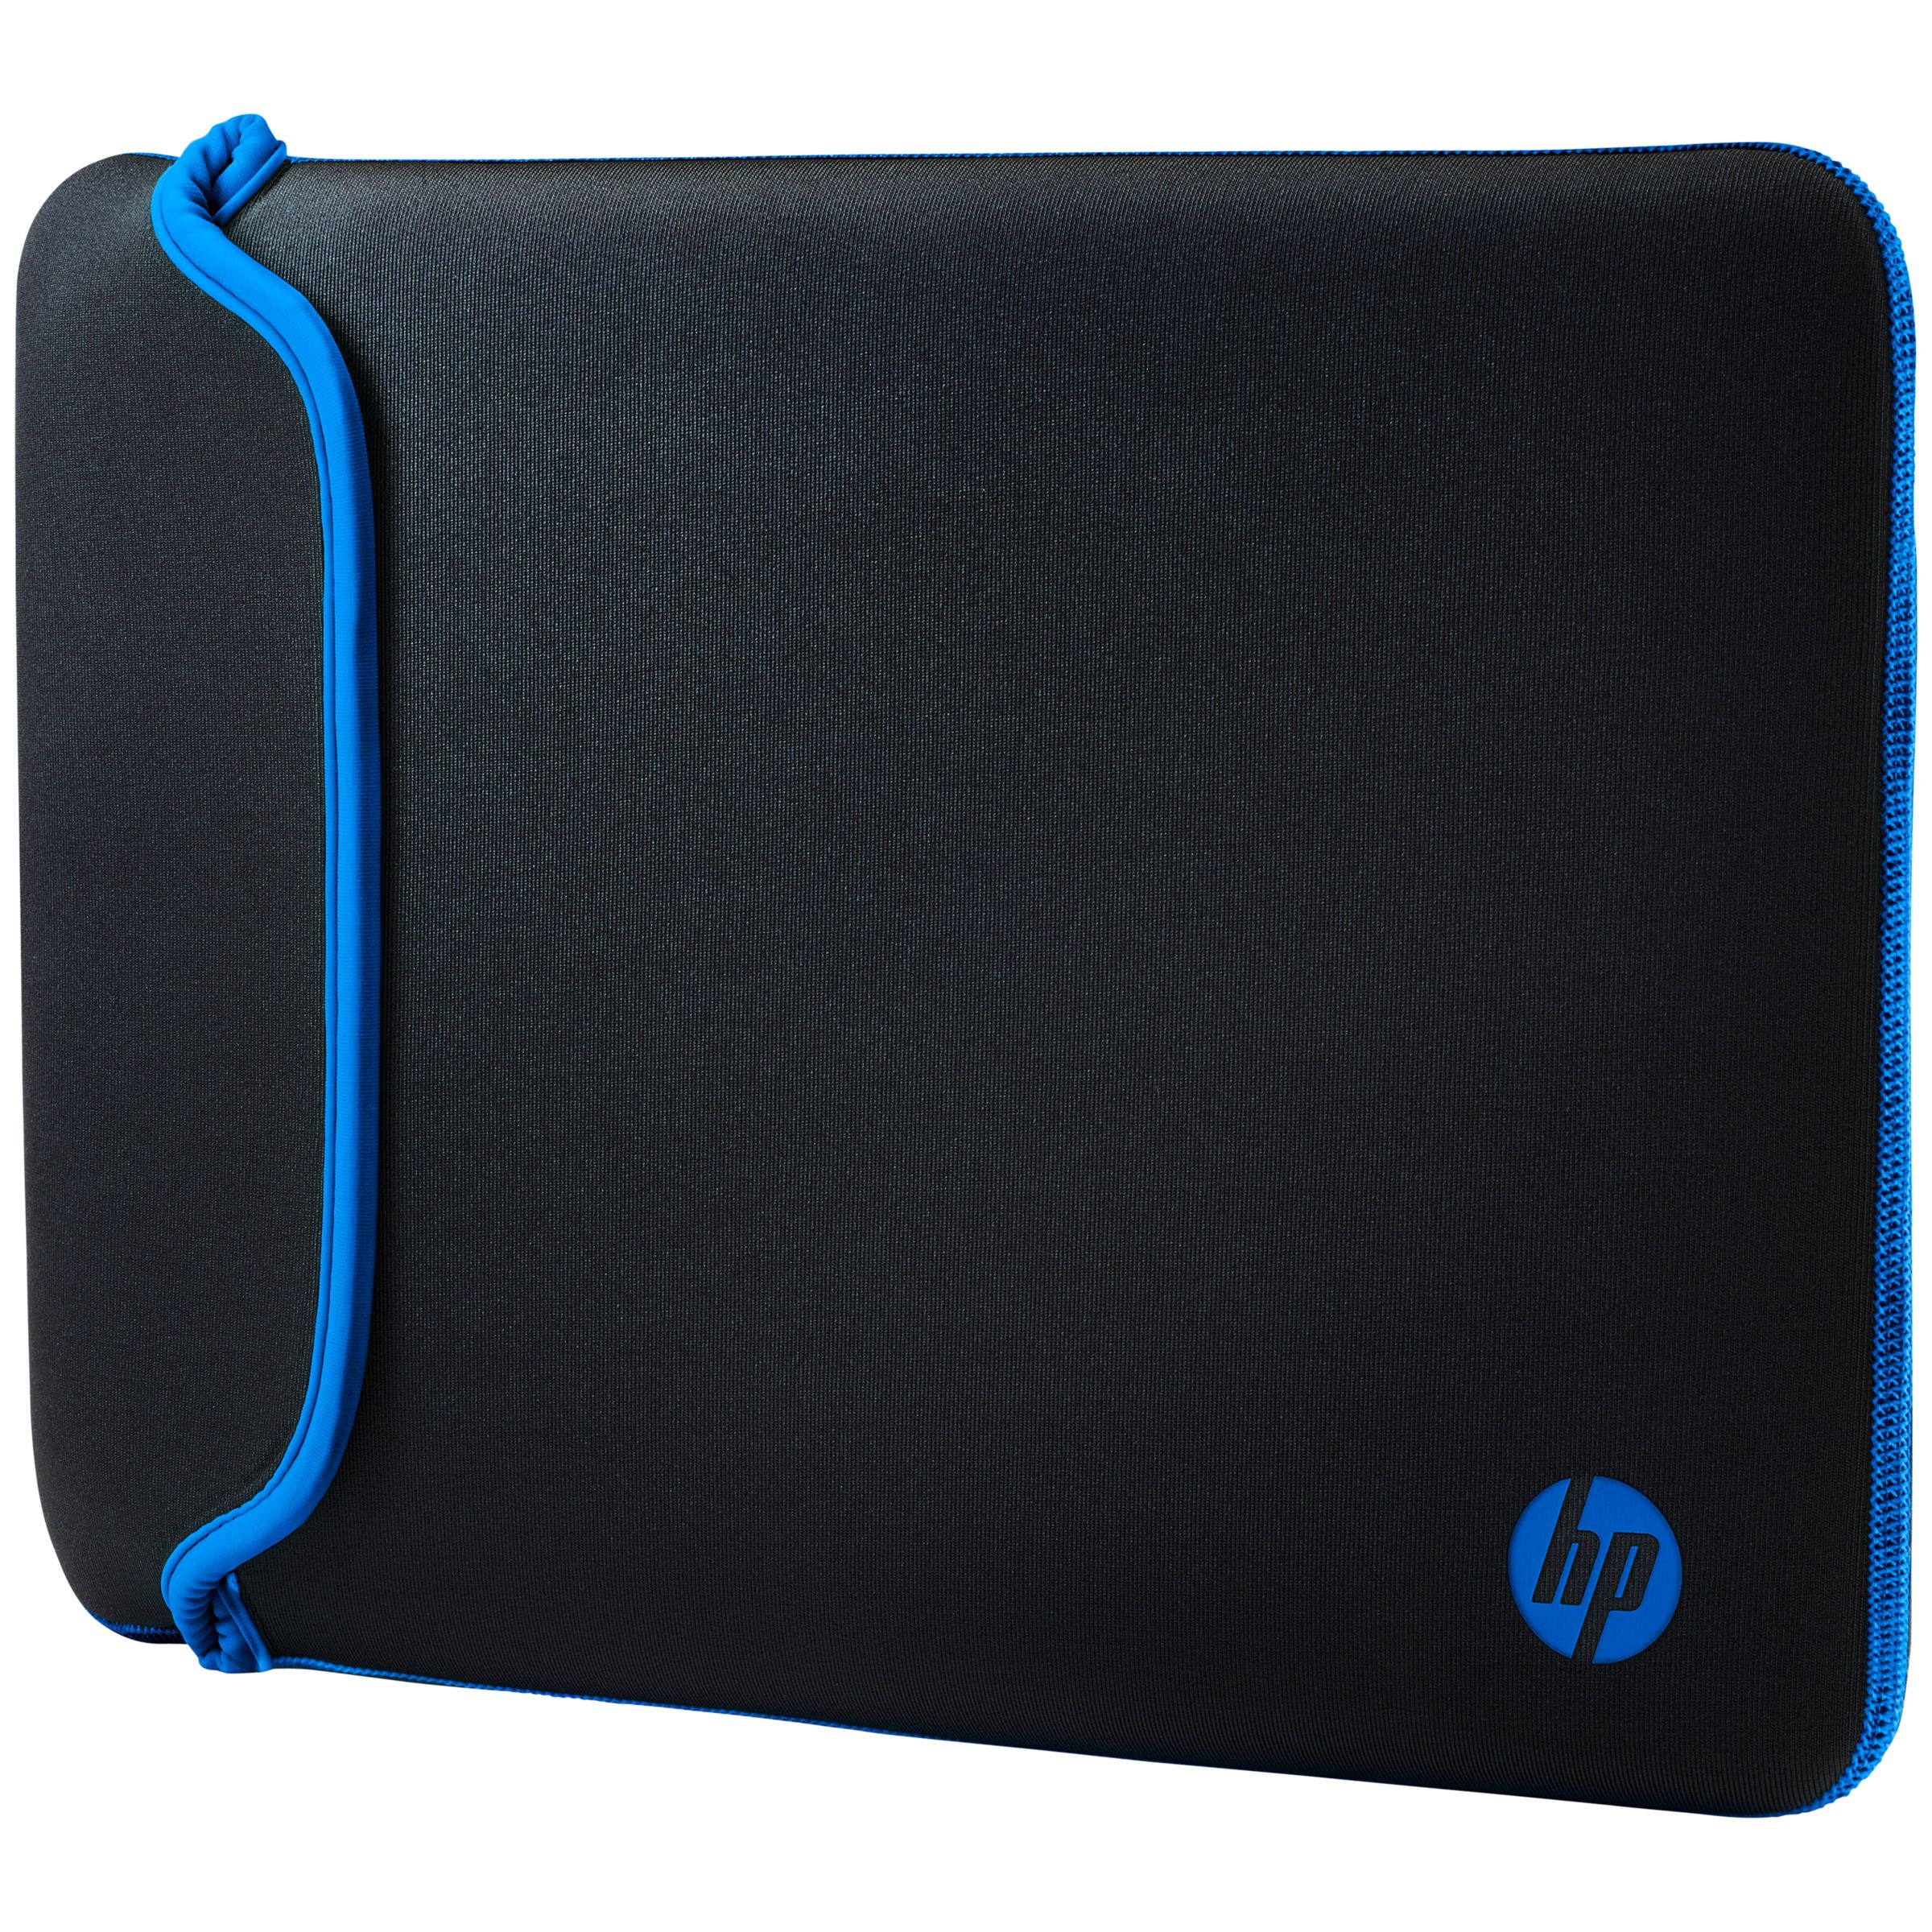 Laptop Cases For Hp Bruin Blog